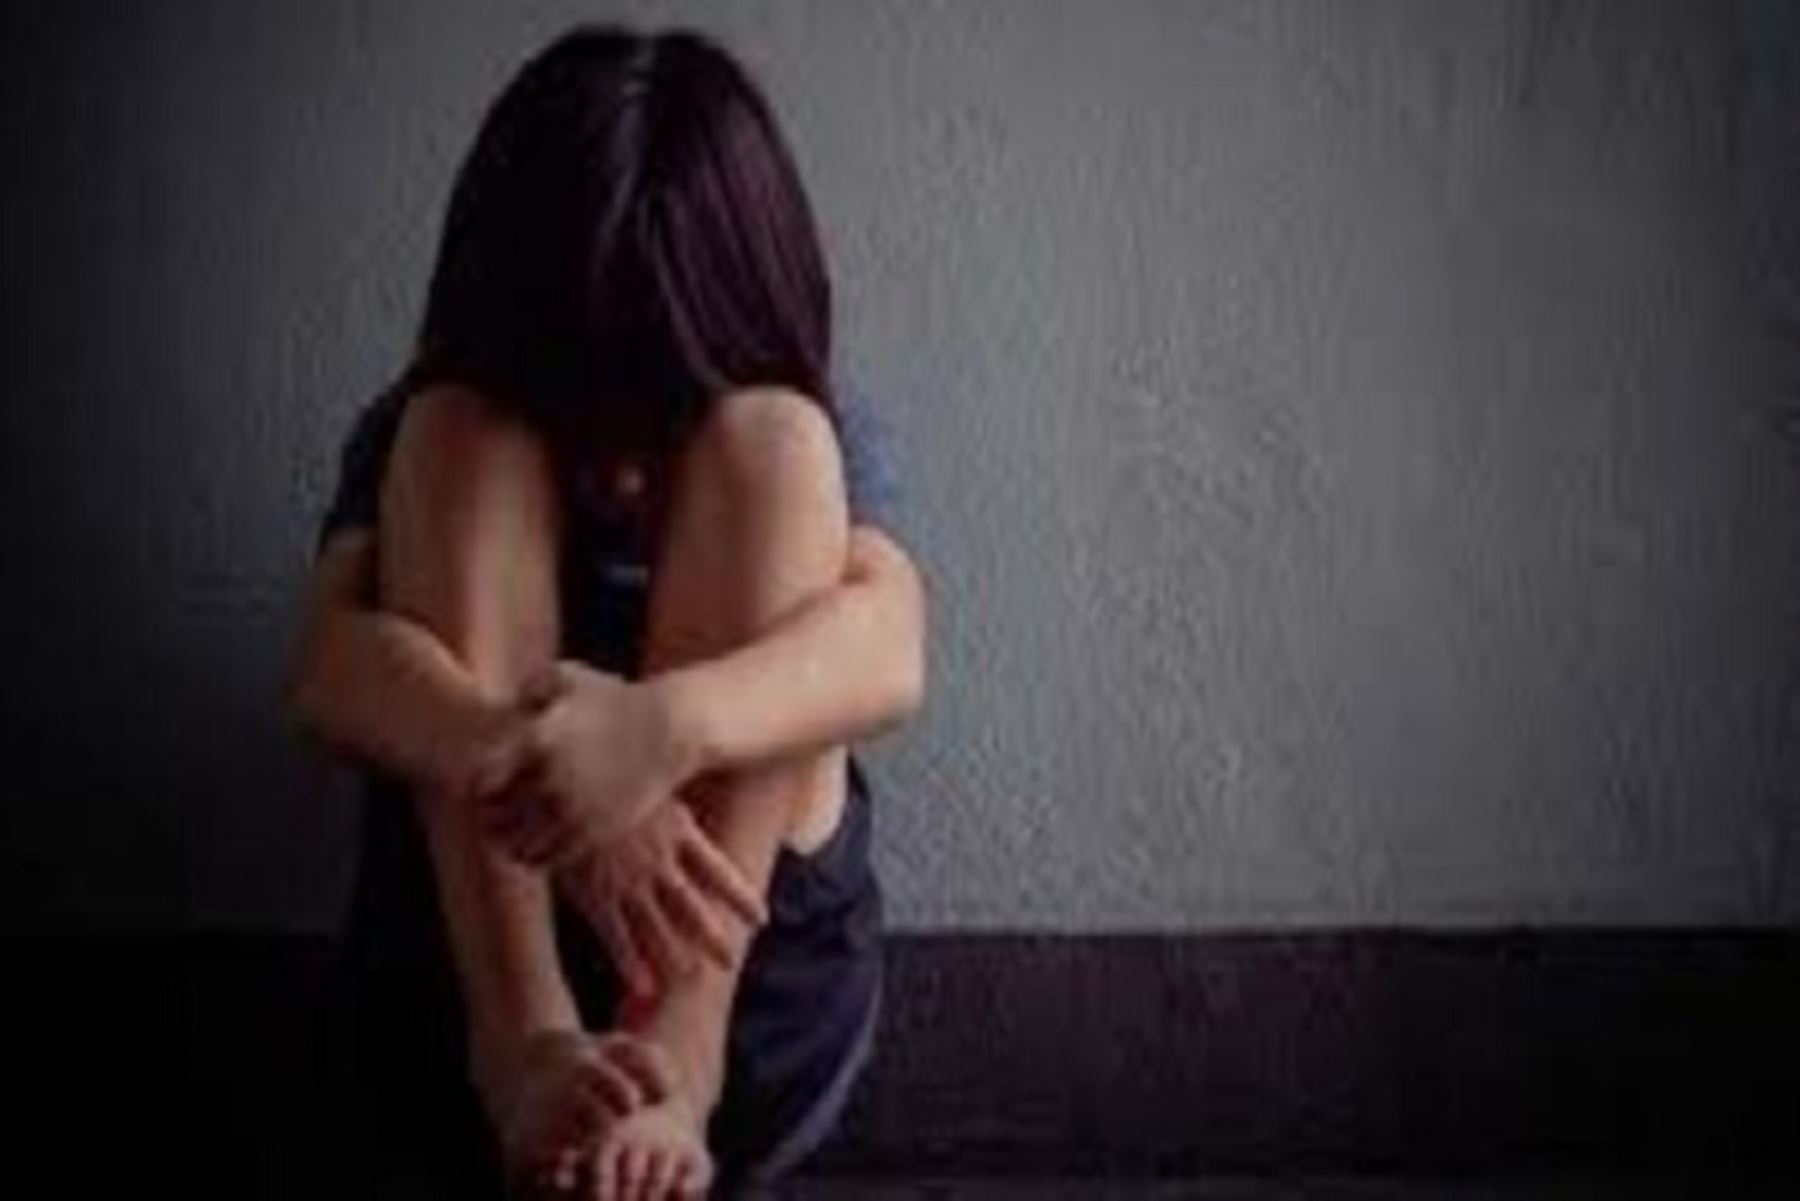 Mimp demanda cadena perpetua para psicólogo que abusó de menor de edad en Ucayali